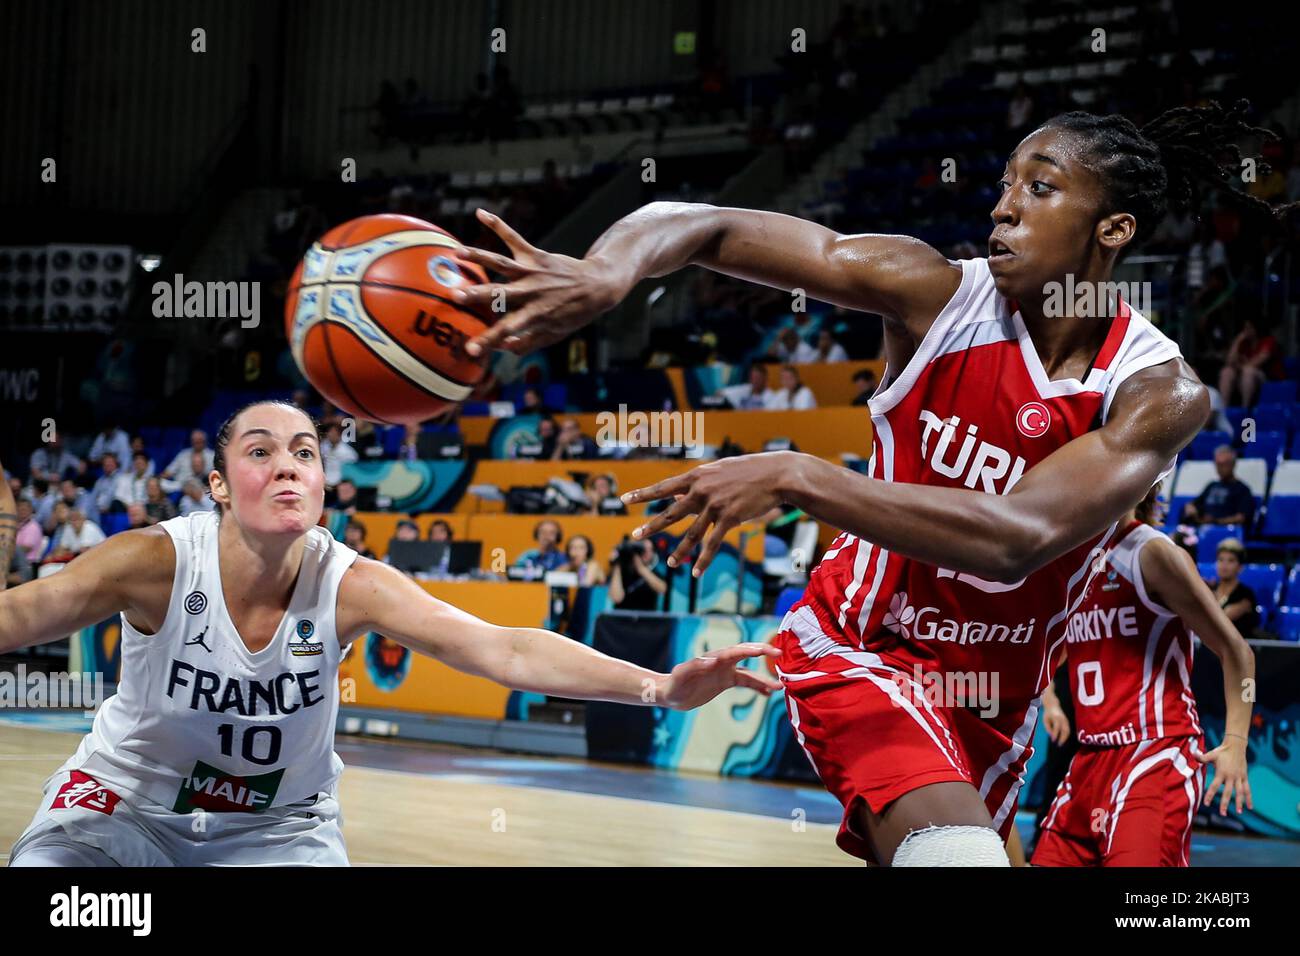 Espagne, Ténérife, 26 septembre 2018: Le joueur turc de basket-ball Quantitra Hollingsworth en action pendant la coupe du monde de basket-ball féminin FIBA Banque D'Images